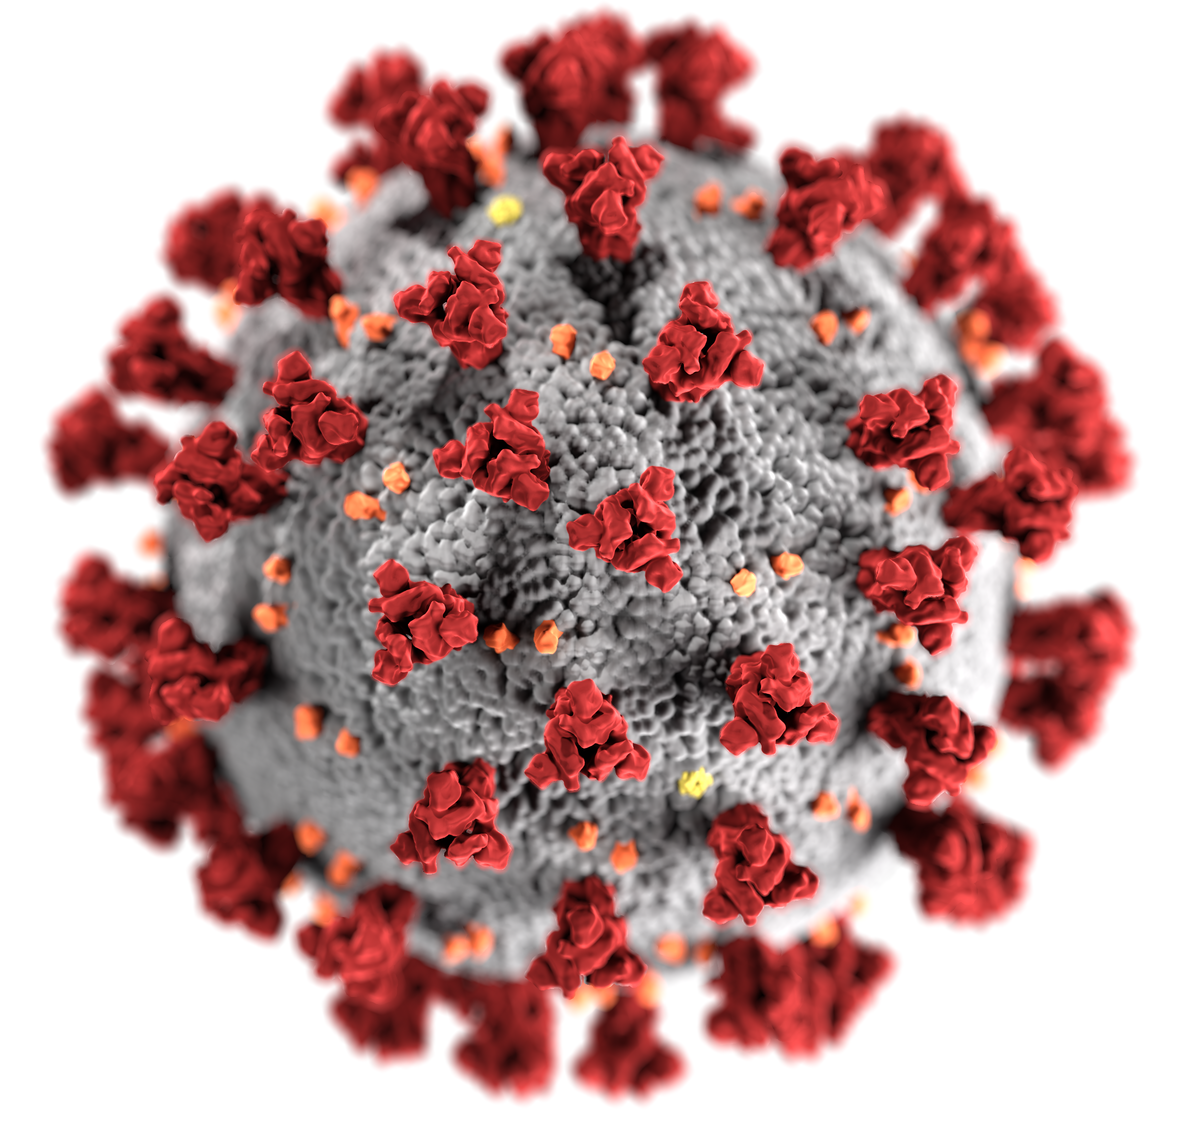 Coronavirus: Unnecessary panic?